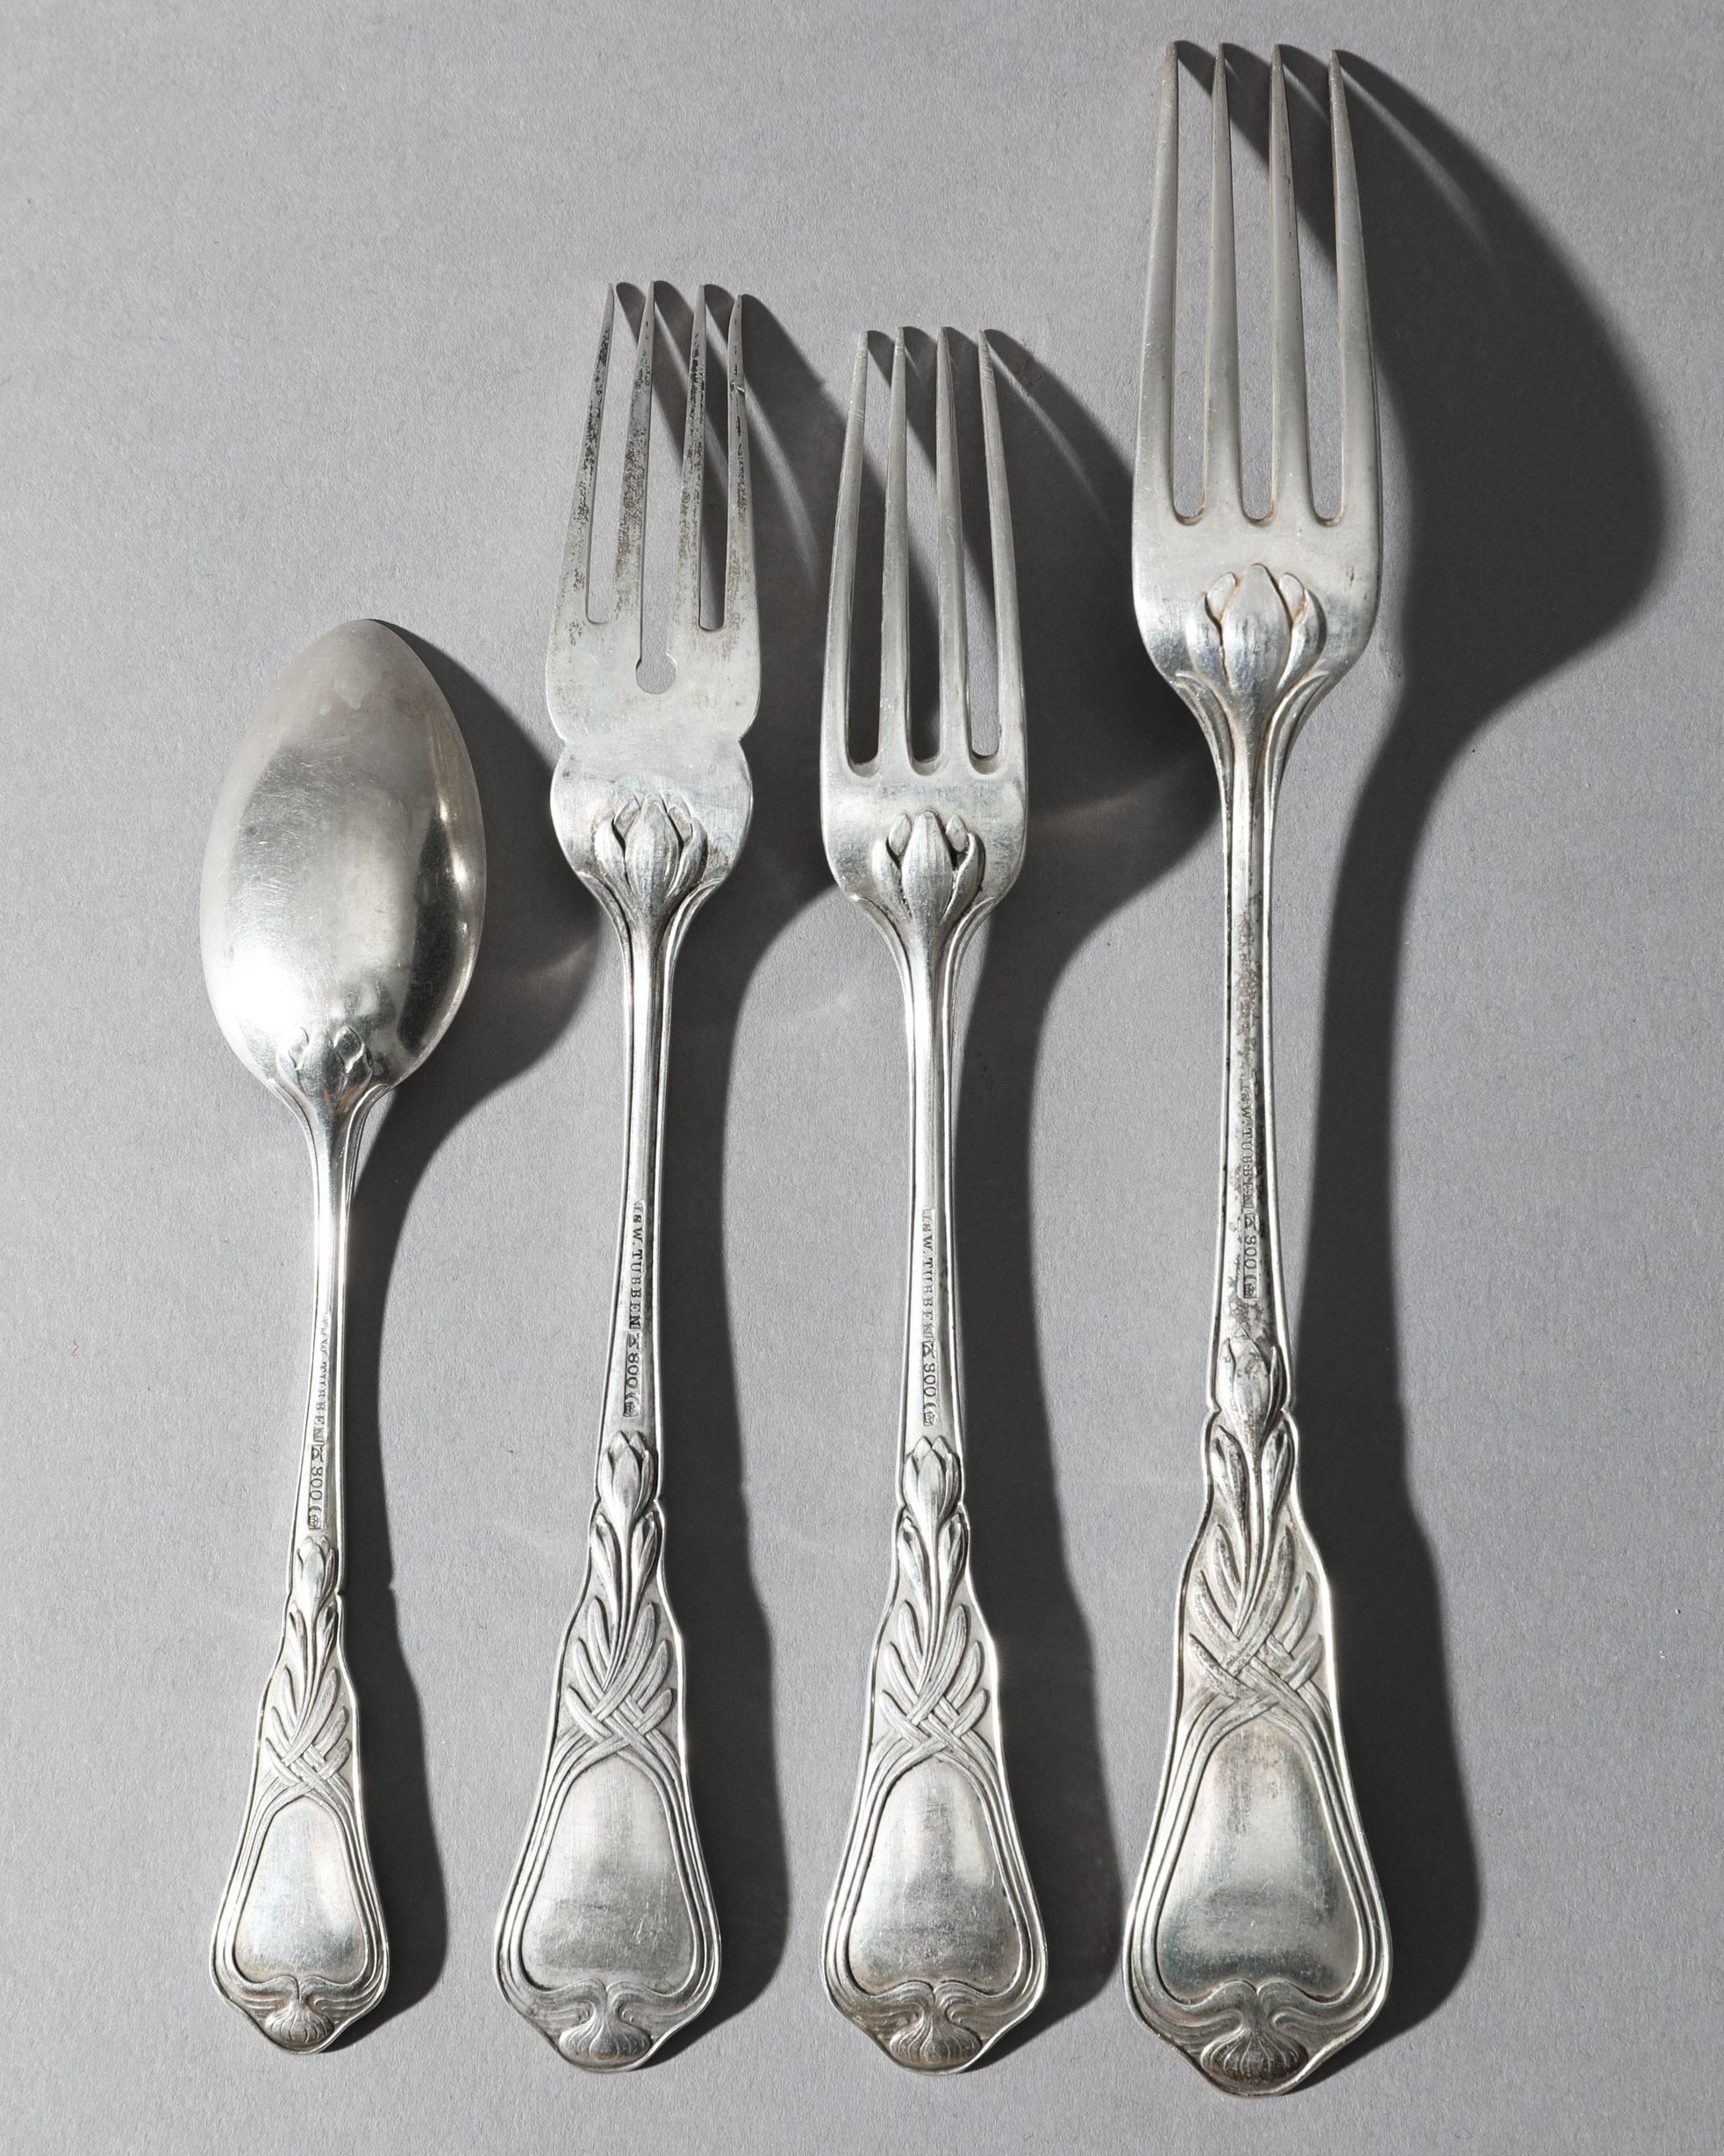 Heinrich Vogeler, Wilkens, Silver Fish Cutlery and Cutlery Herbstzeitlose, 48 pieces - Image 5 of 7